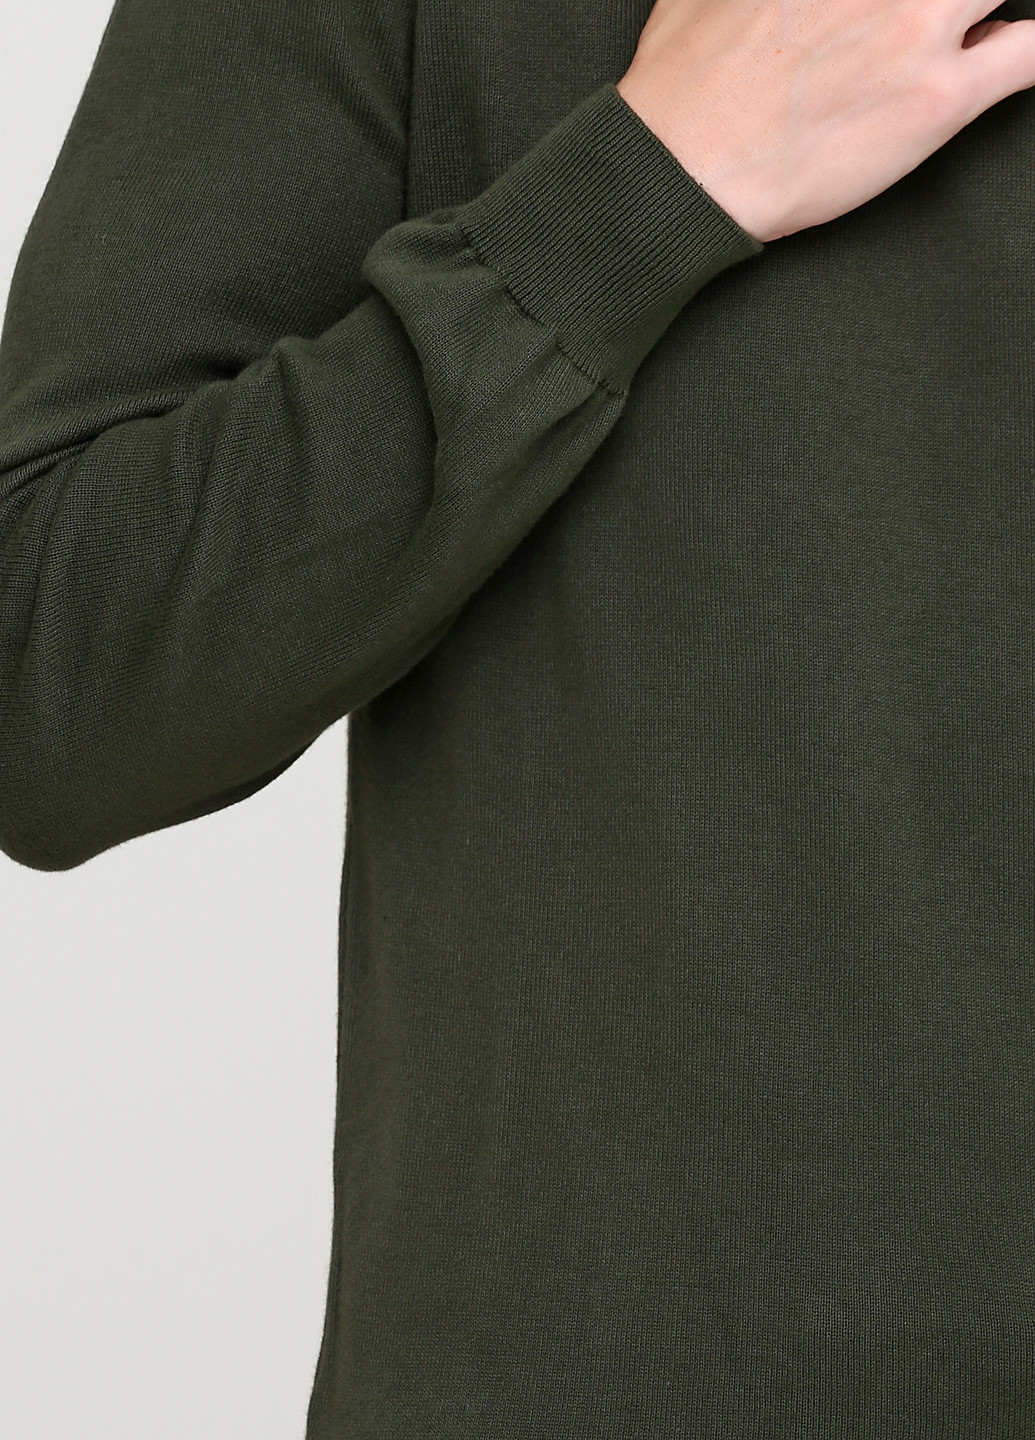 Оливковый (хаки) демисезонный пуловер пуловер Madoc Jeans